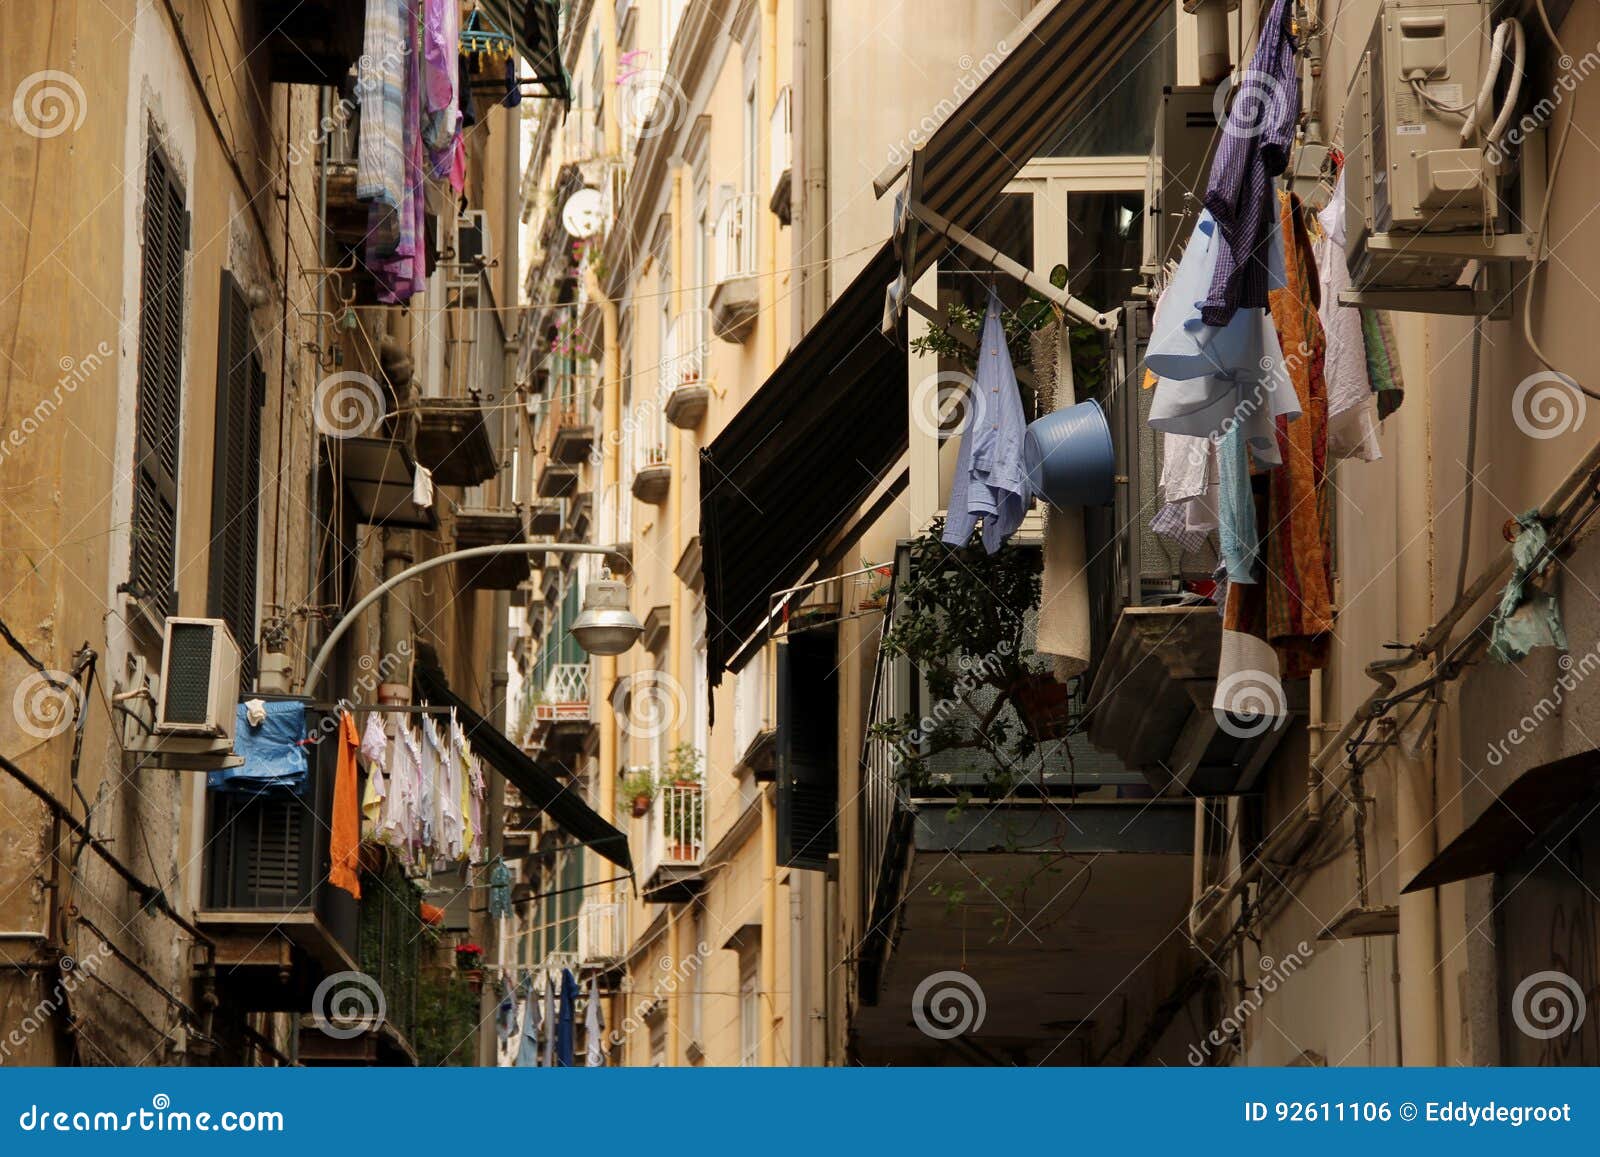 Pralniana osuszka w wąskich ulicach Naples, Włochy